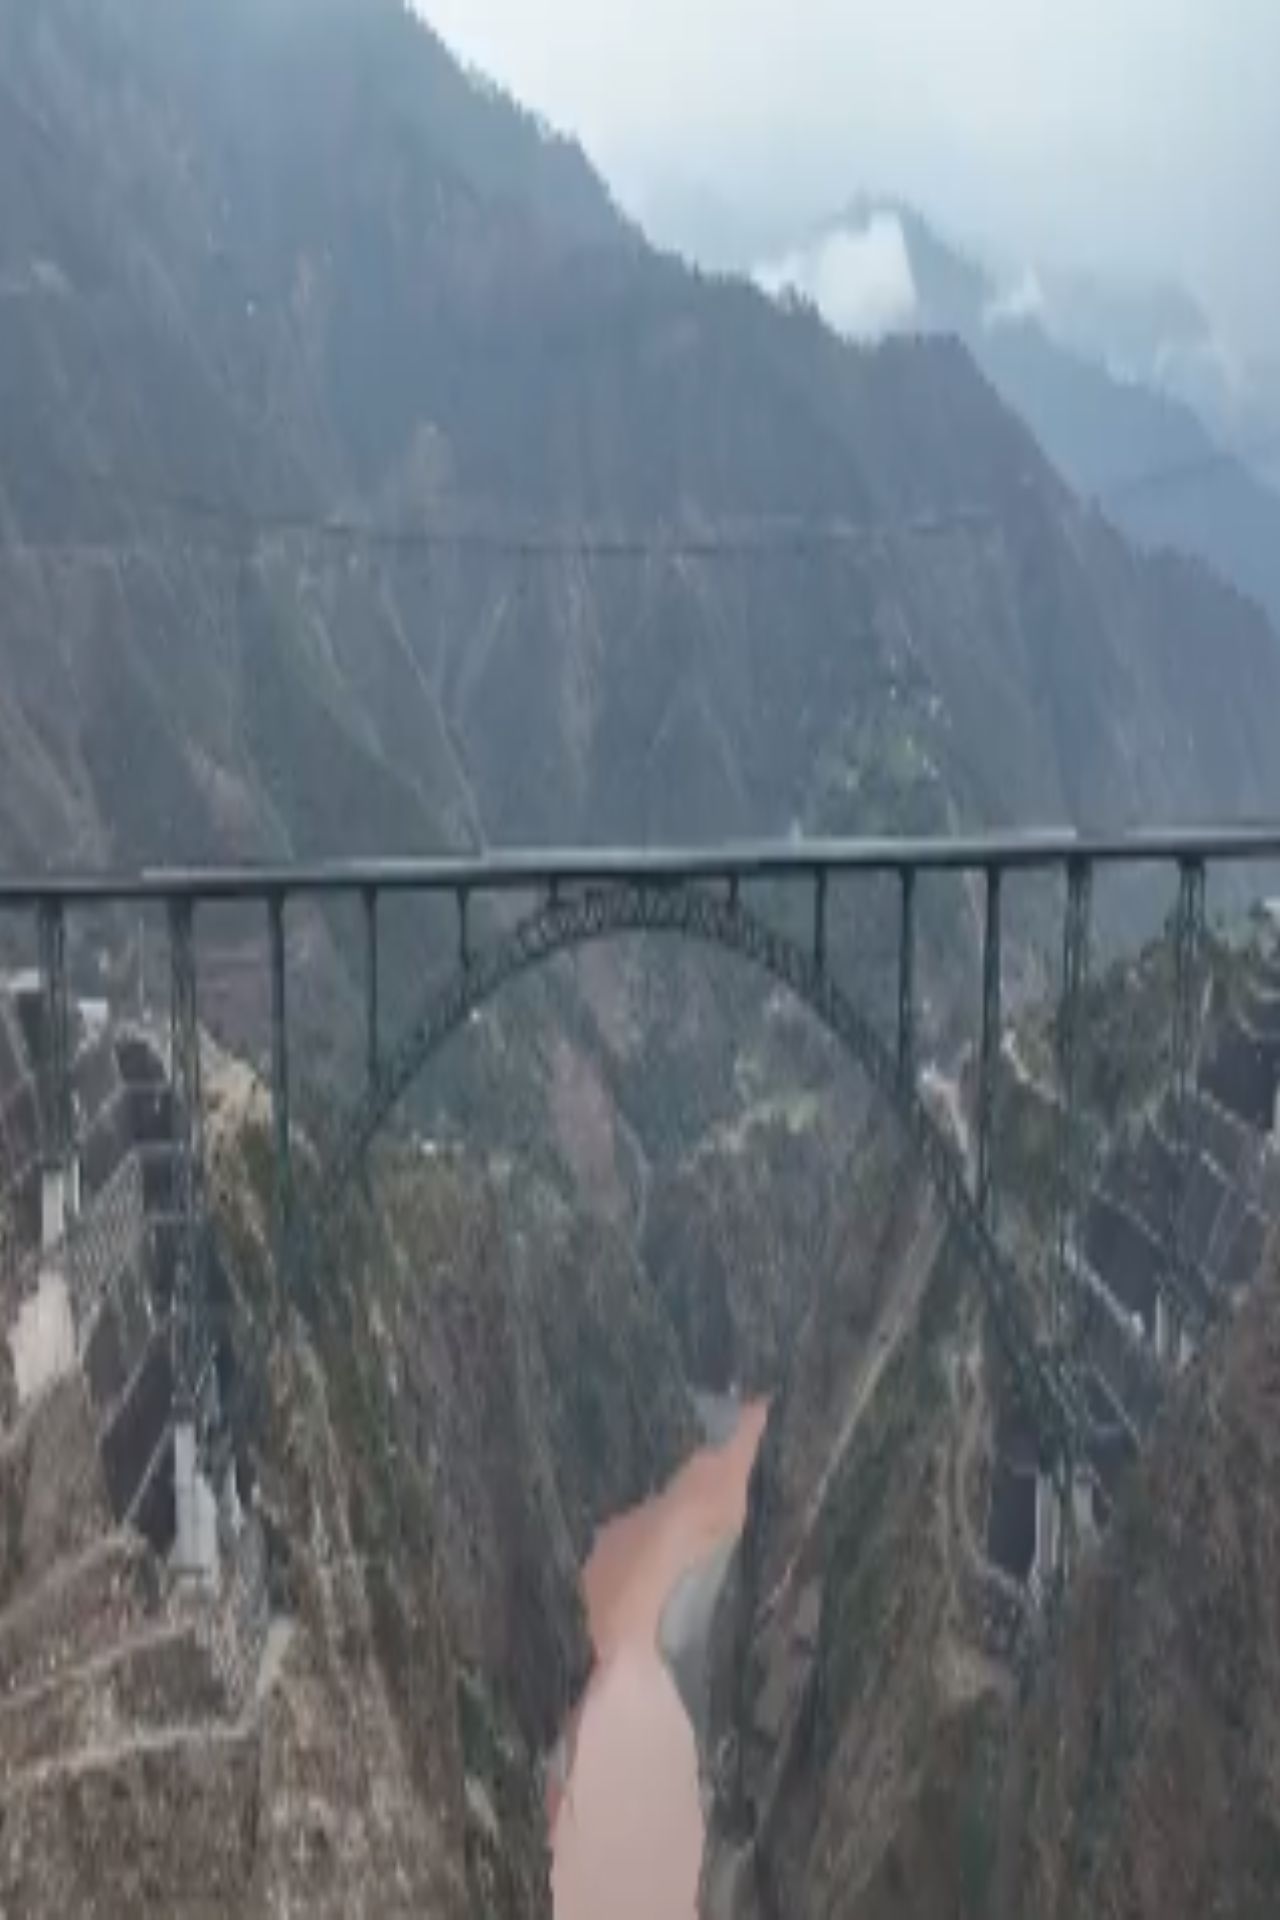 इस देश में मौजूद है दुनिया का सबसे ऊंचा Rail Bridge